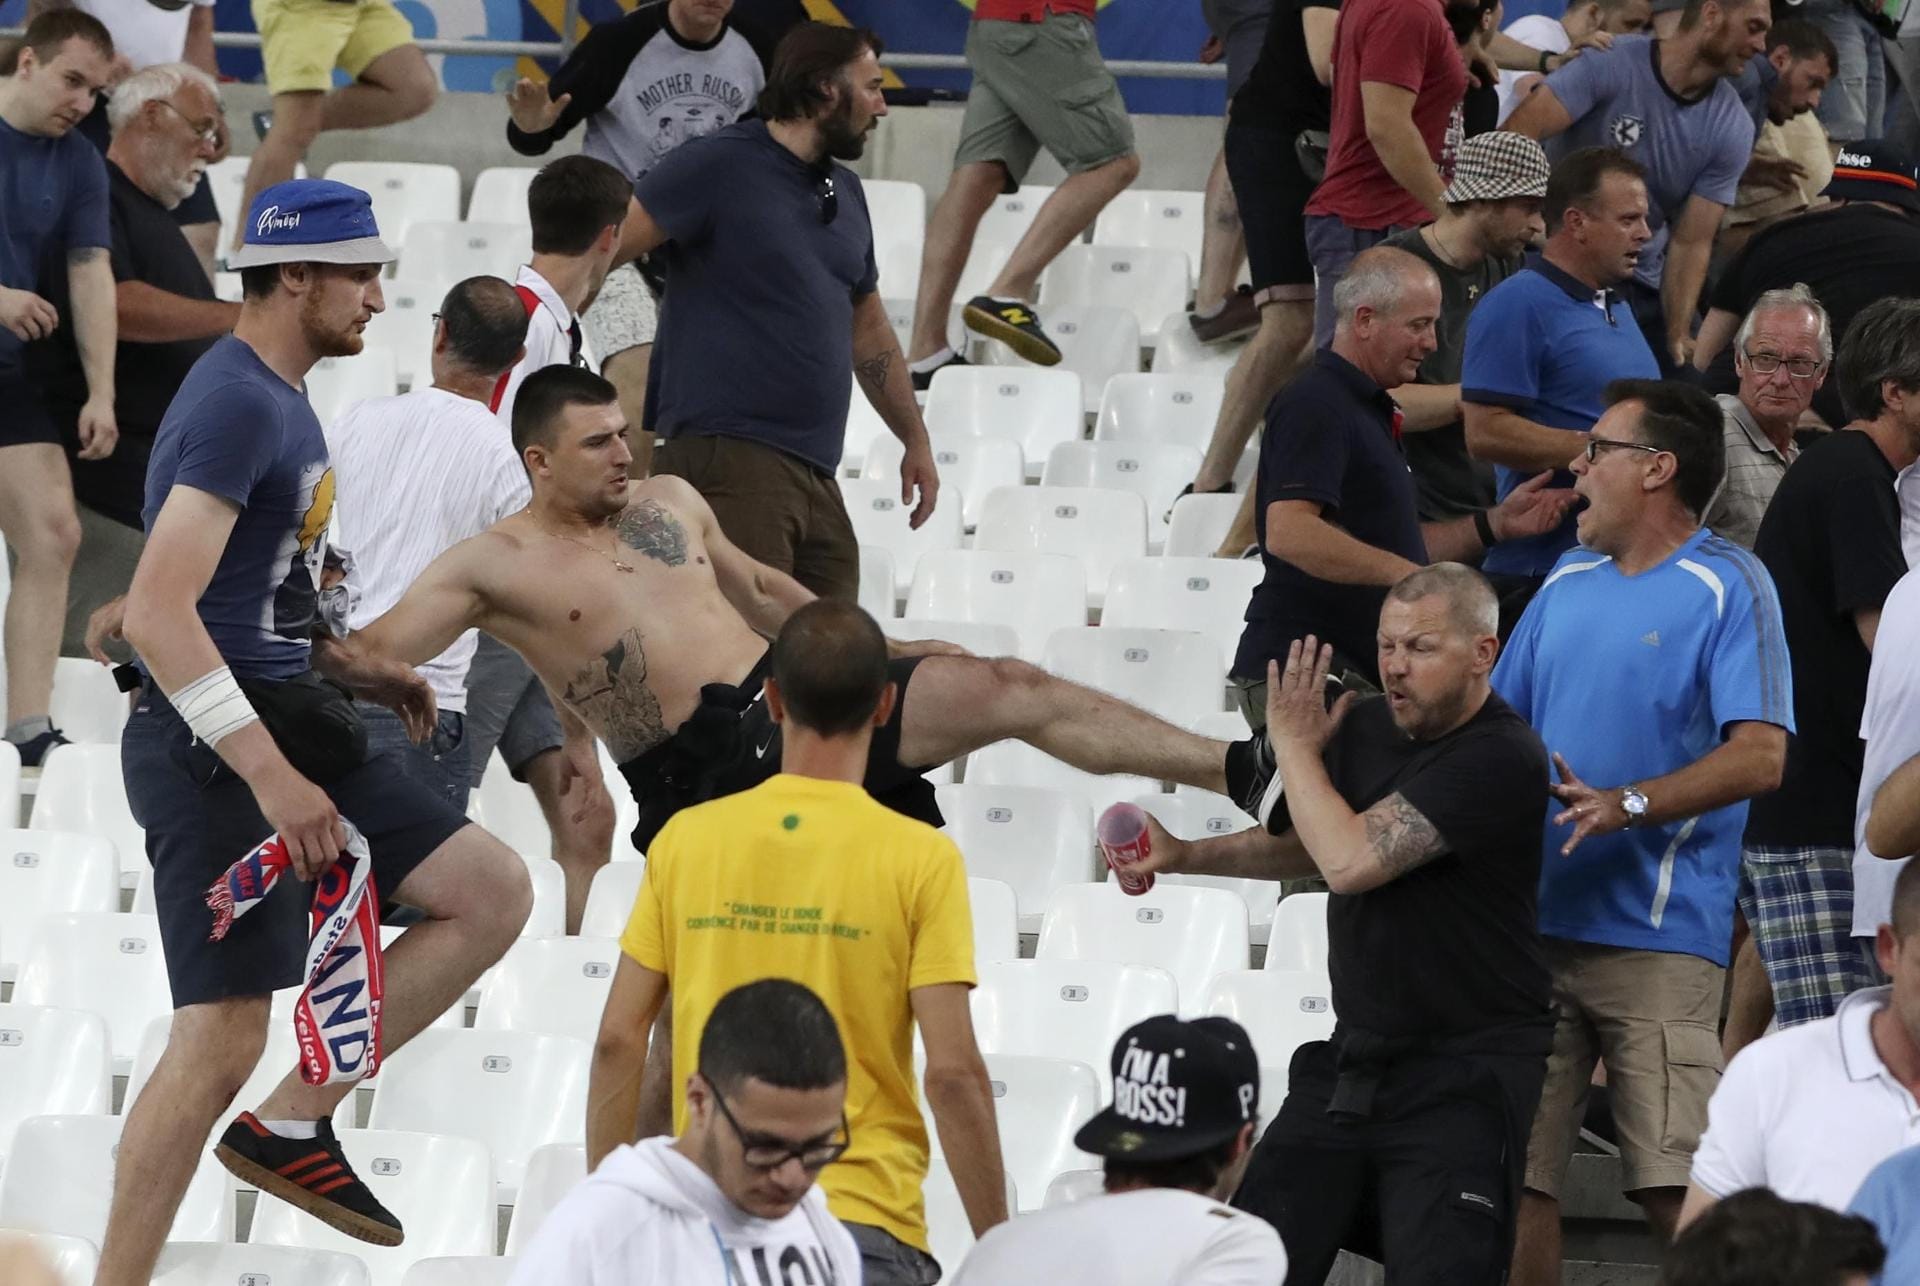 Dutzende russische Fußball-Fans stürmten kurz nach dem Abpfiff auf englische Anhänger los. Sie bewarfen sie mit Leuchtraketen und rissen Flaggen herunter. Es kam zu Schlägereien.